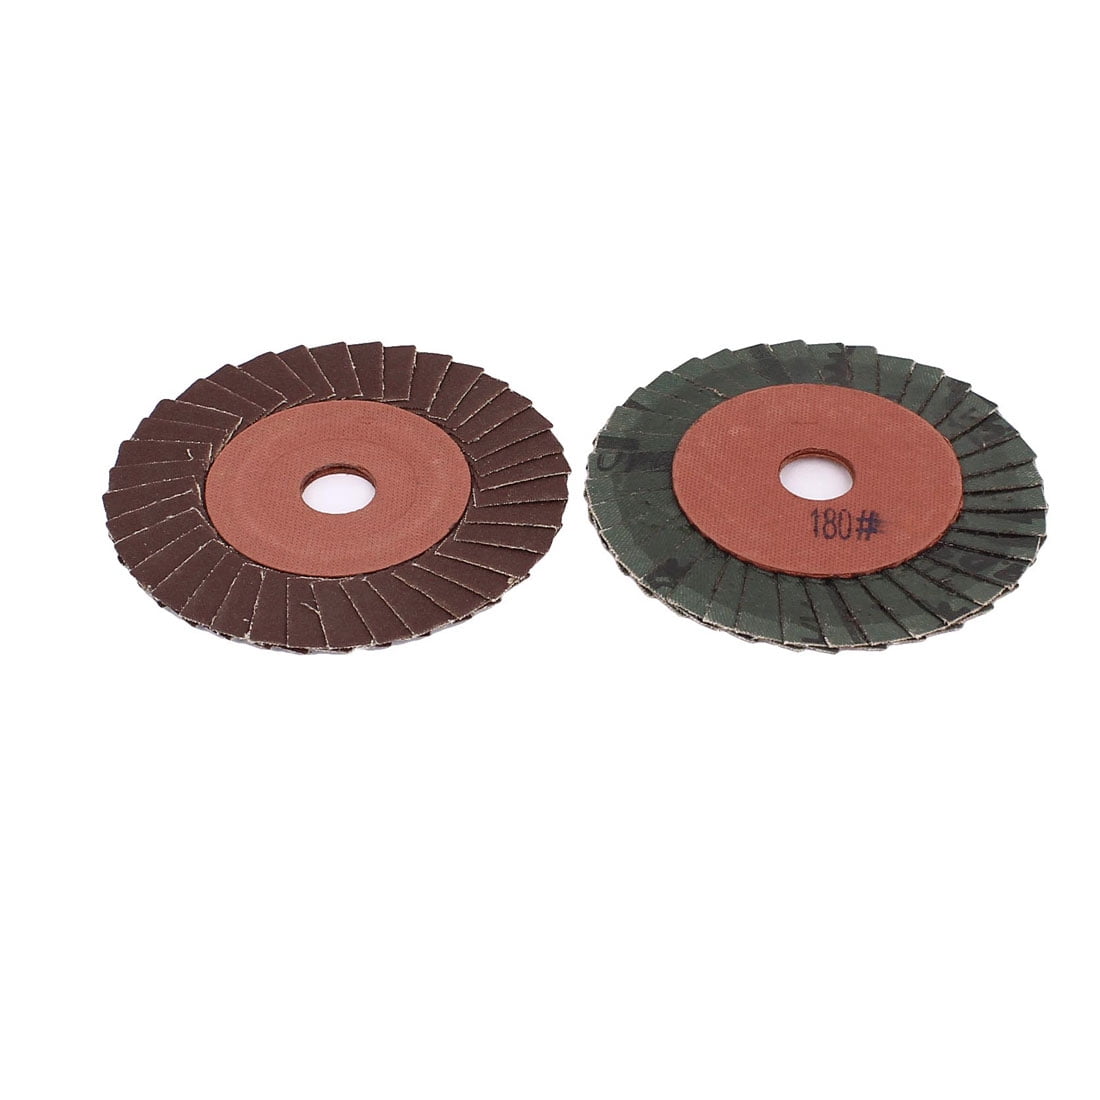 50PCS Fibre Sanding Grinding Discs Wheels 24-120Grit For Angle Grinder 100/115mm 